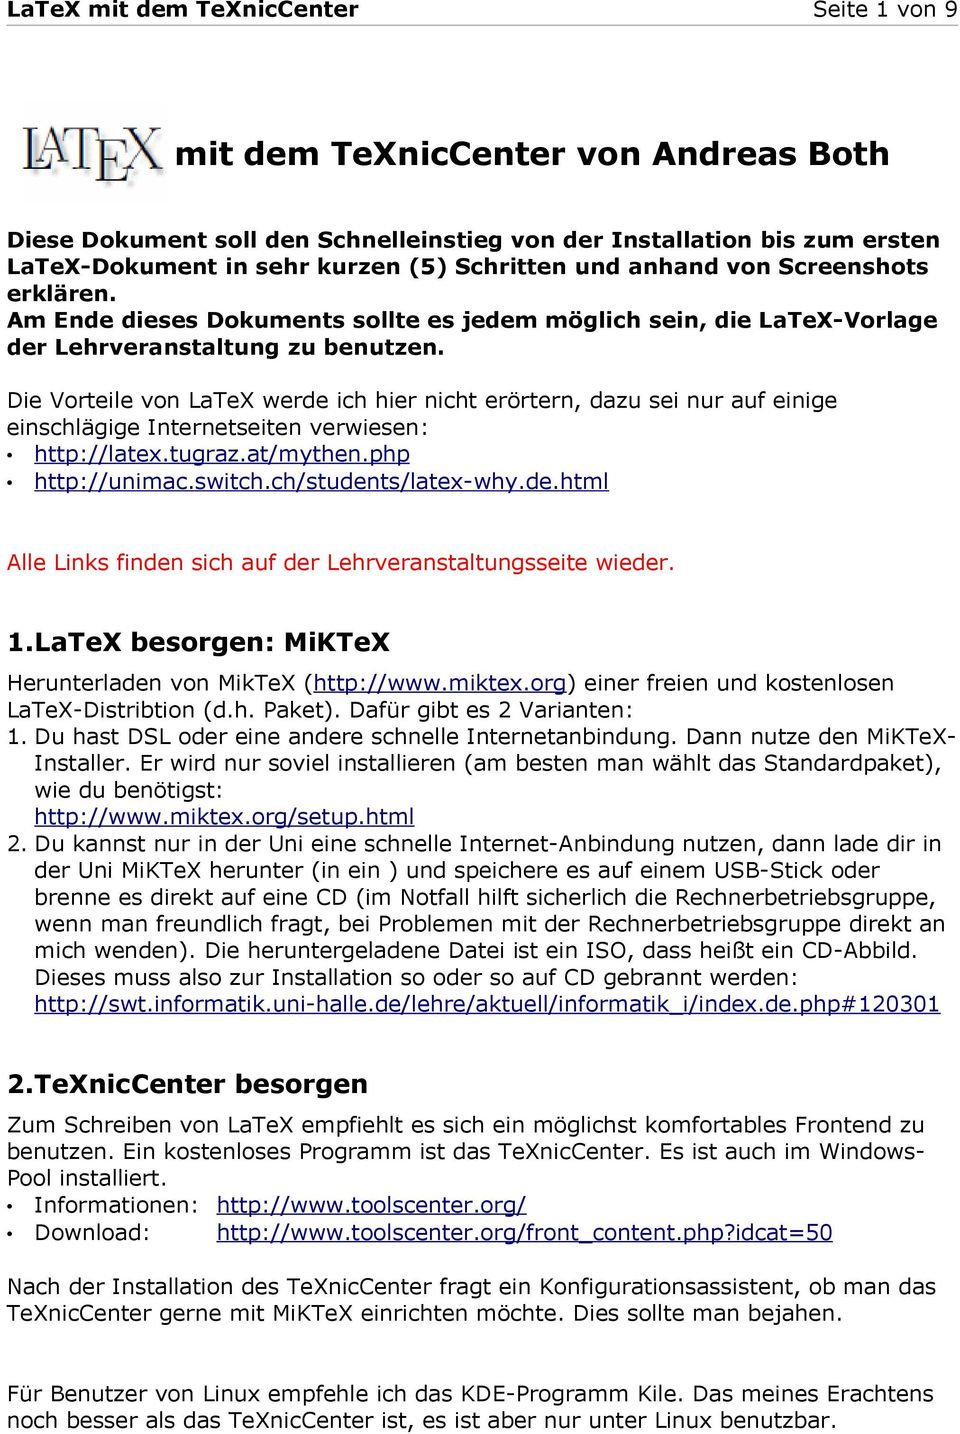 Die Vorteile von LaTeX werde ich hier nicht erörtern, dazu sei nur auf einige einschlägige Internetseiten verwiesen: http://latex.tugraz.at/mythen.php http://unimac.switch.ch/students/latex-why.de.html Alle Links finden sich auf der Lehrveranstaltungsseite wieder.